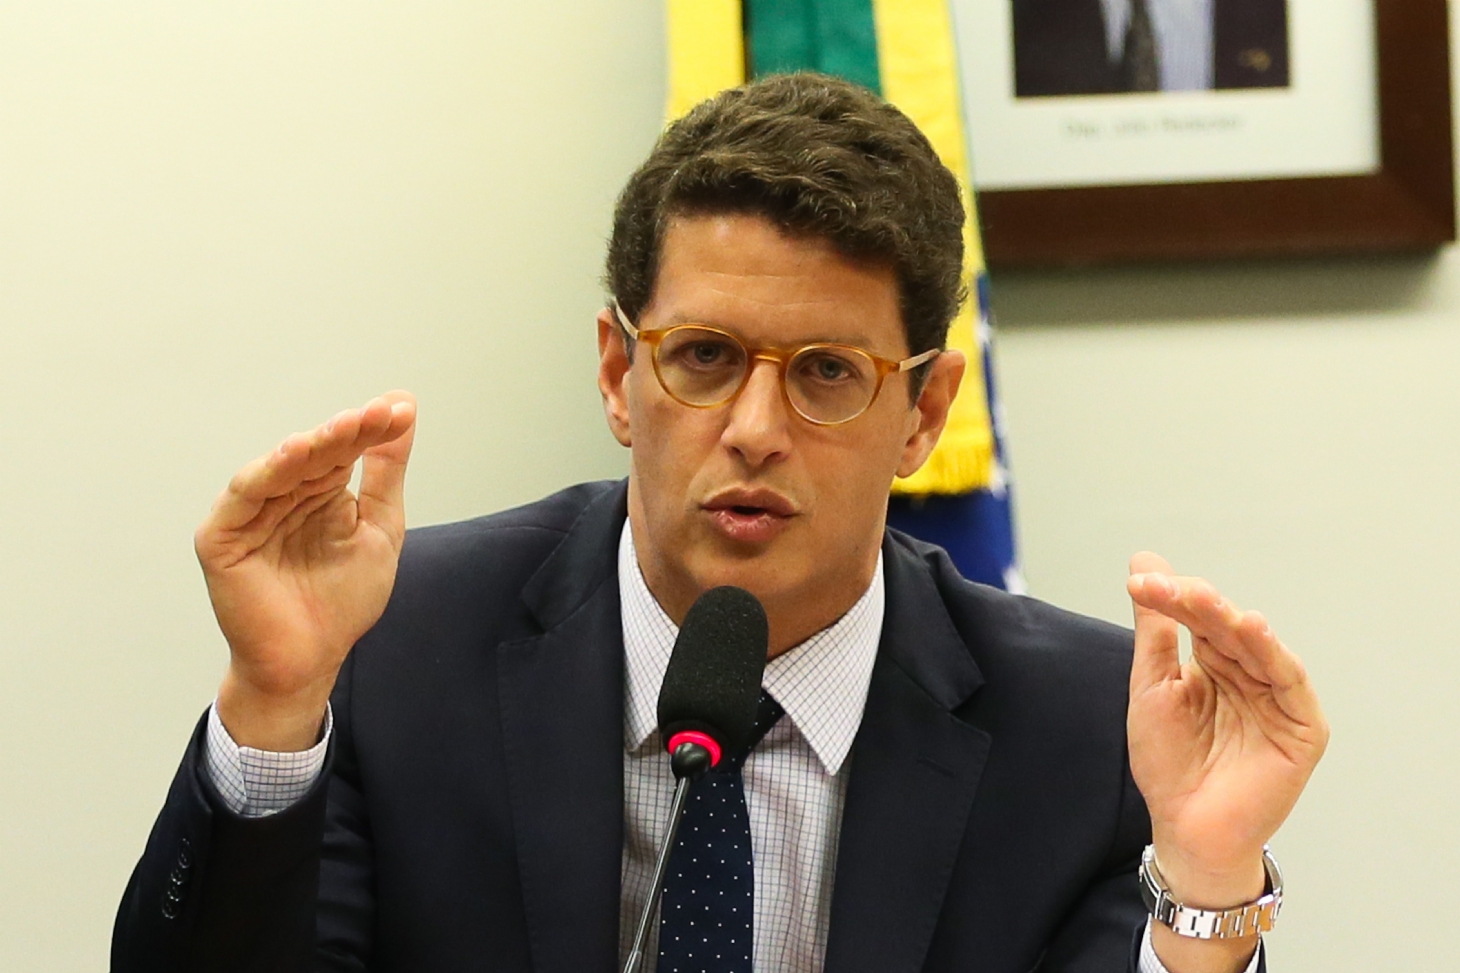 Ricardo Salles e mais 17 são investigados em operação da PF | Jornal da Orla